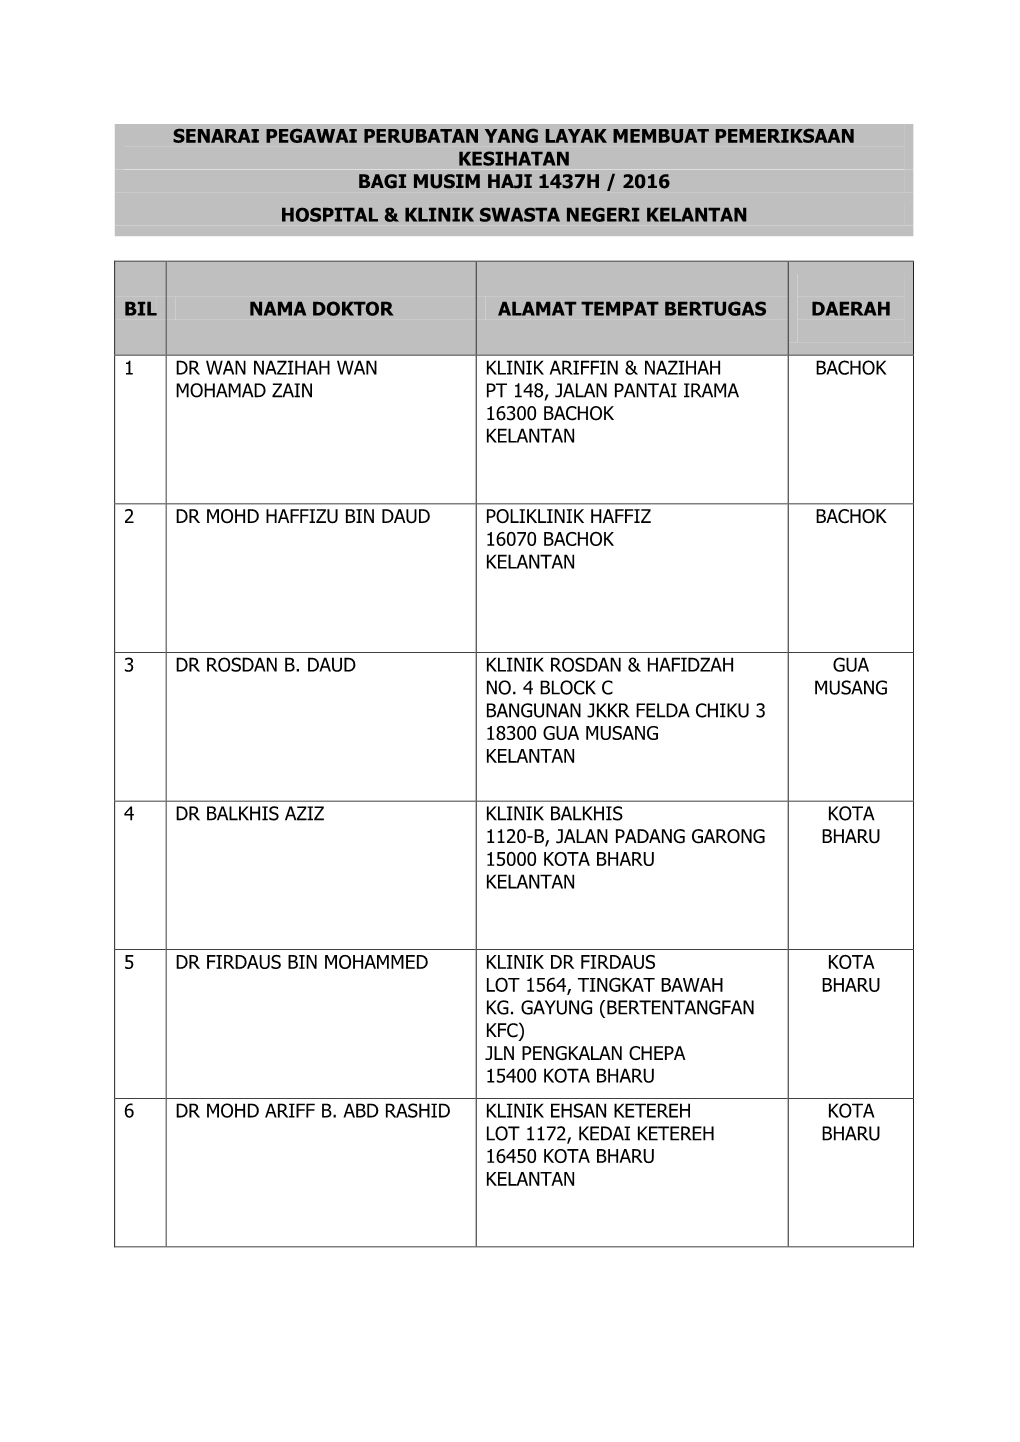 Senarai Pegawai Perubatan Yang Layak Membuat Pemeriksaan Kesihatan Bagi Musim Haji 1437H / 2016 Hospital & Klinik Swasta Negeri Kelantan